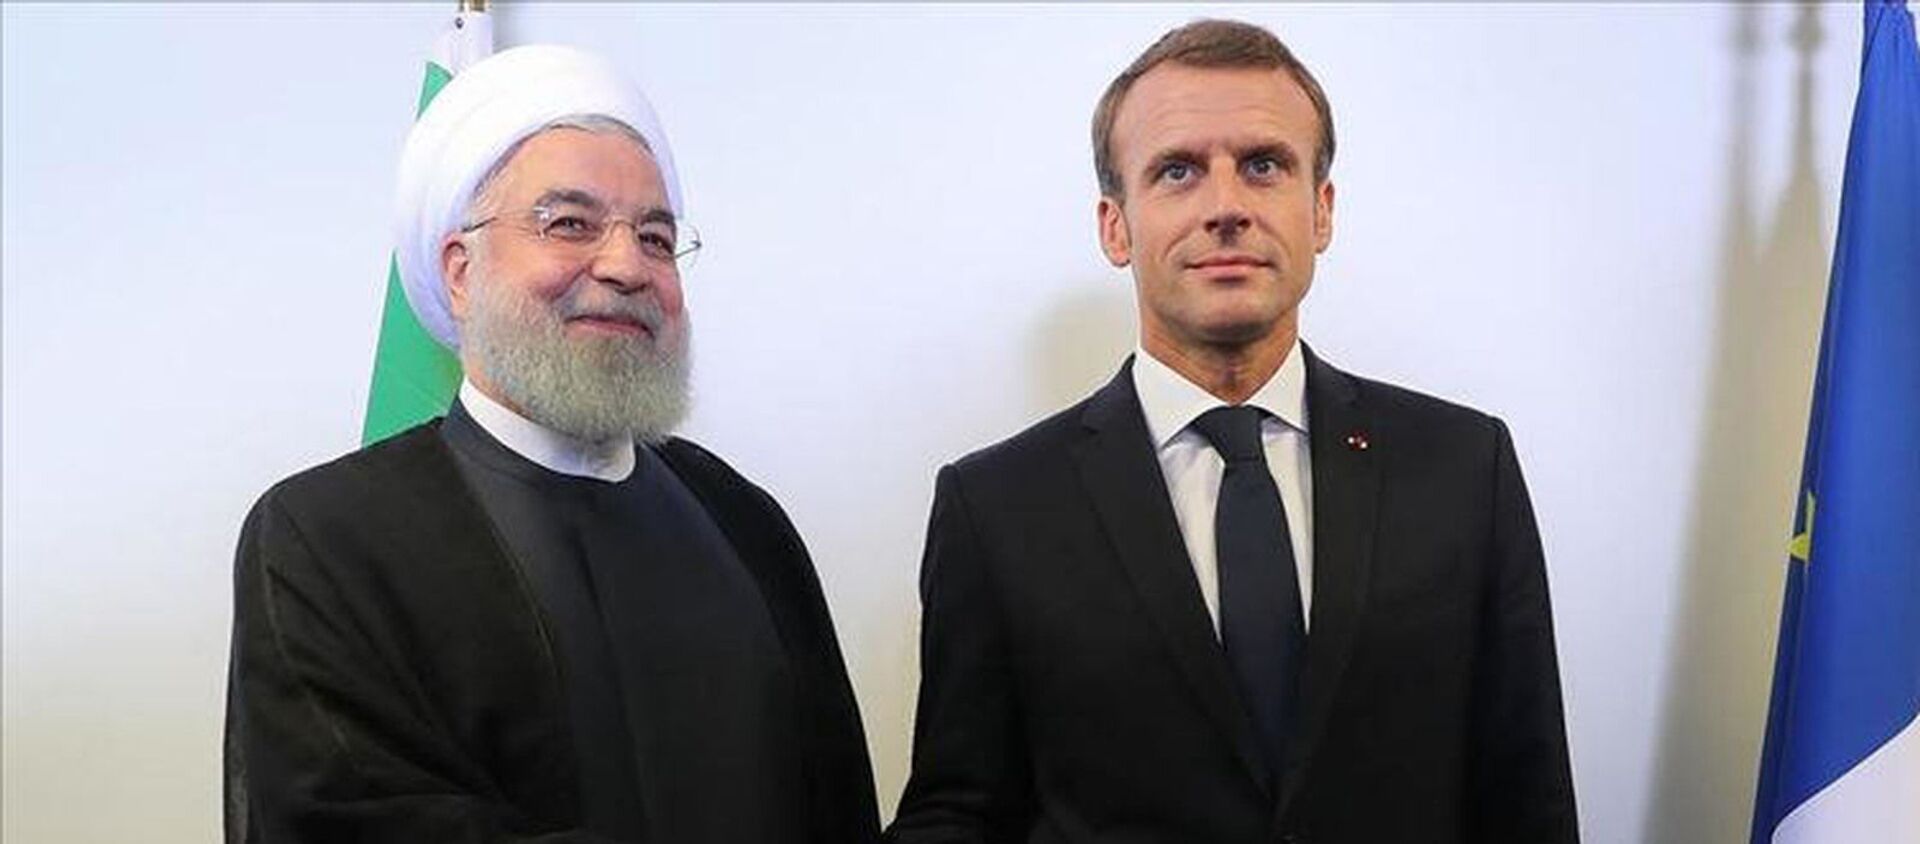 İran Cumhurbaşkanı Hasan Ruhani ile Fransa Cumhurbaşkanı Emmanuel Macron - Sputnik Türkiye, 1920, 02.03.2021